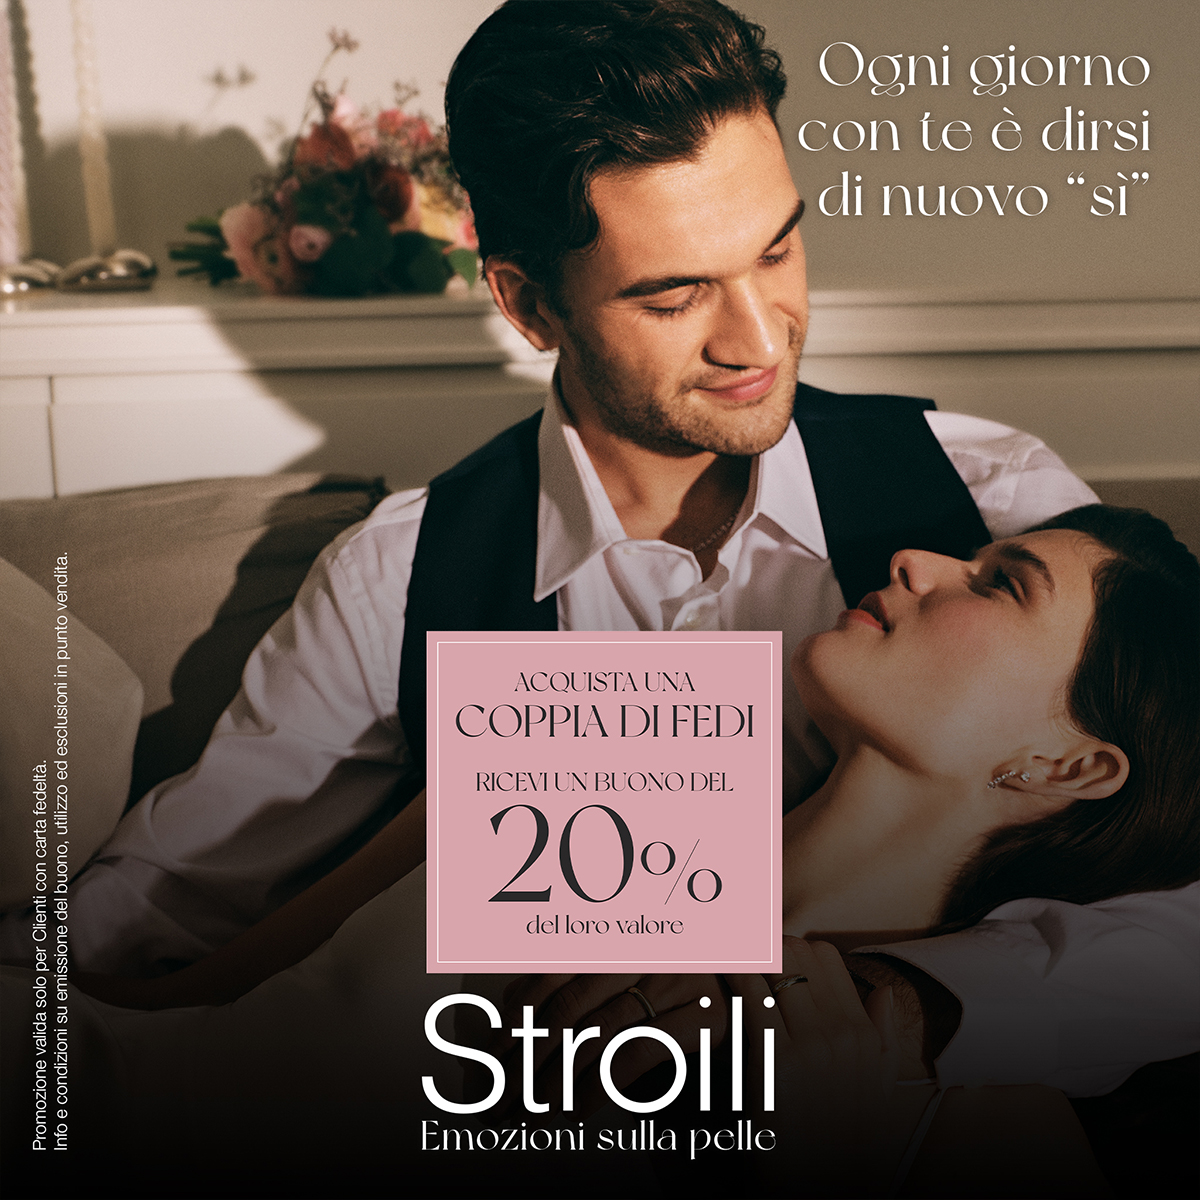 Stroili - Buono 20%